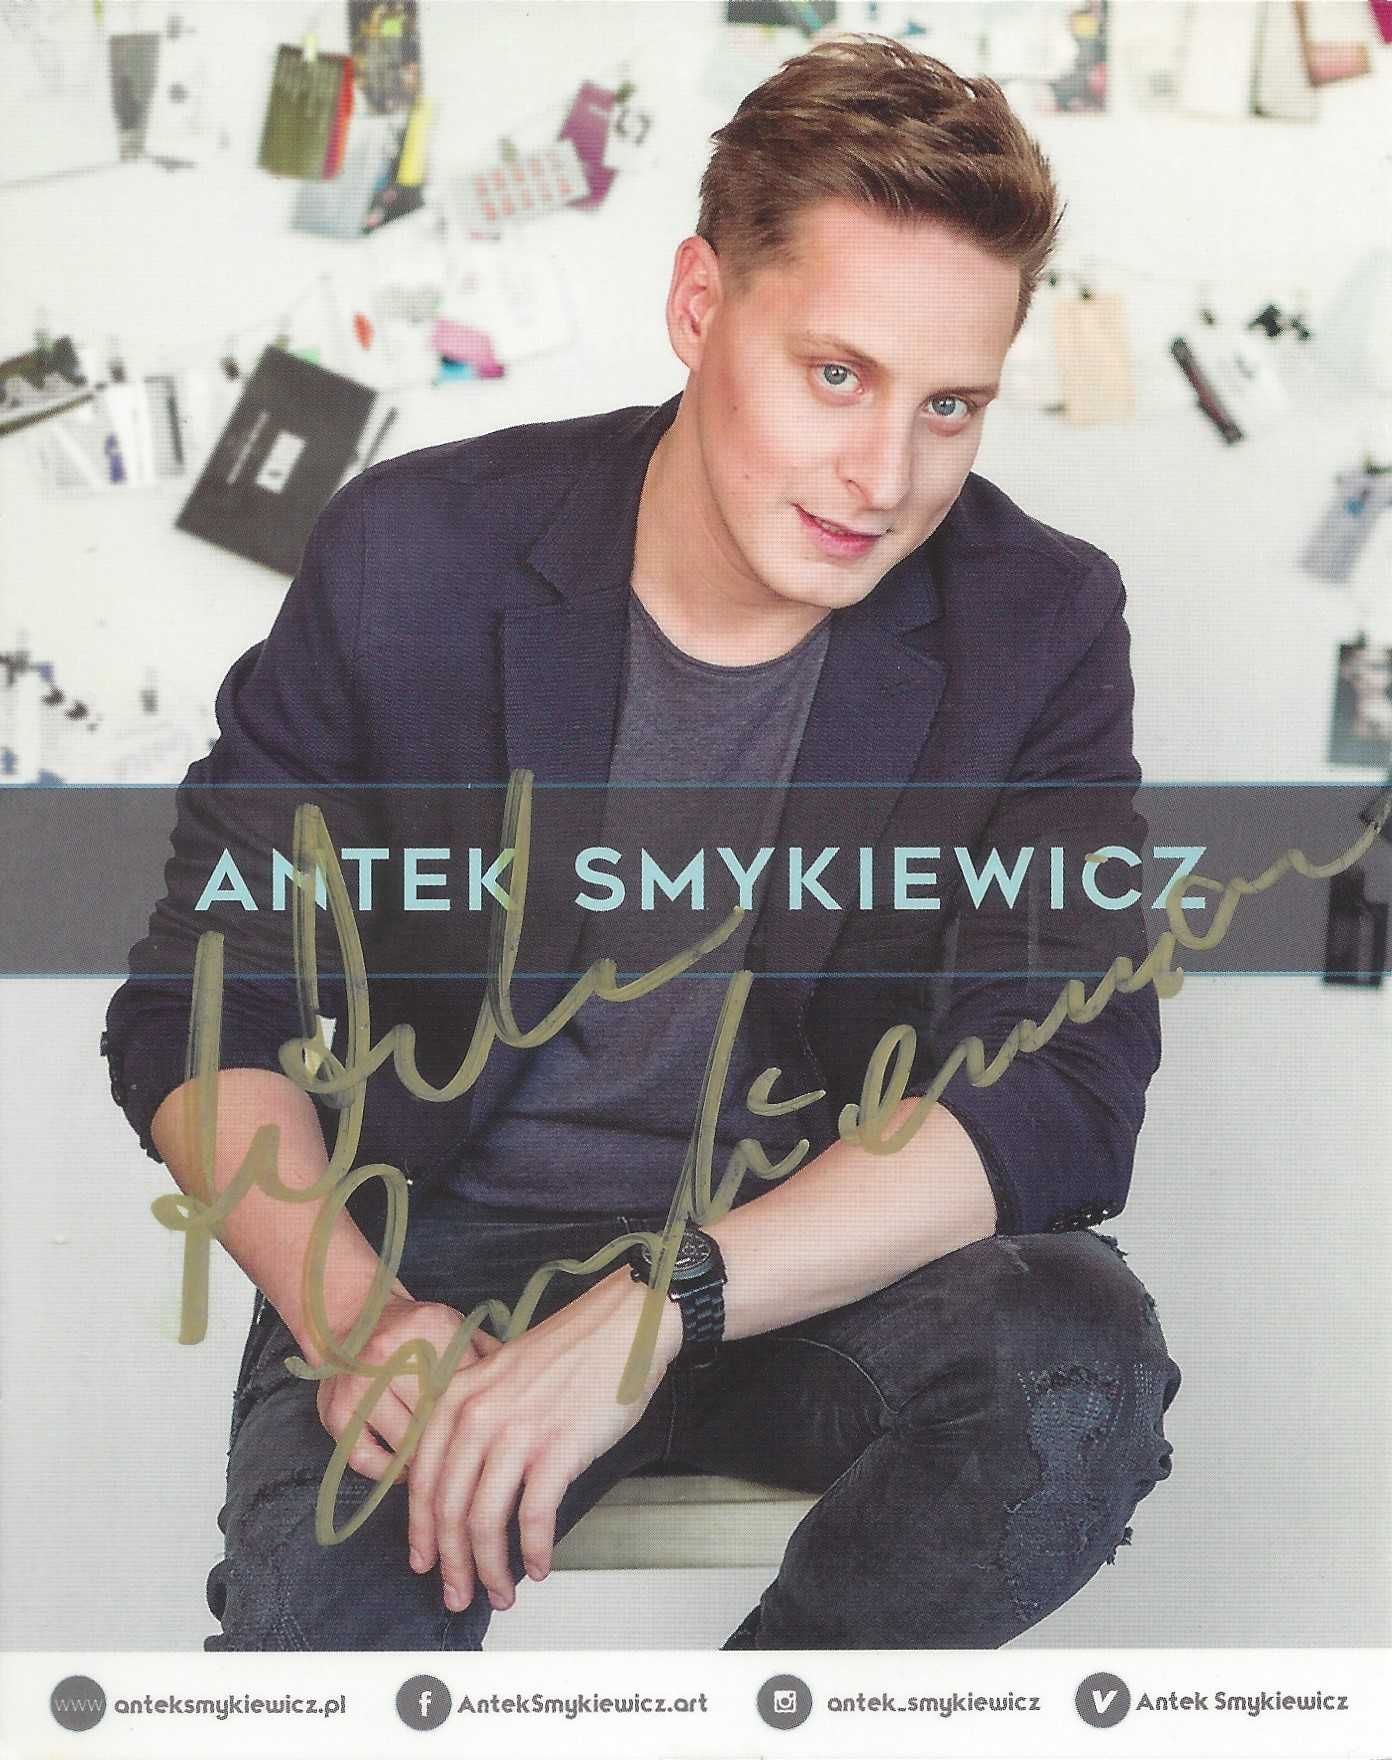 Autograf Antek Smykiewicz